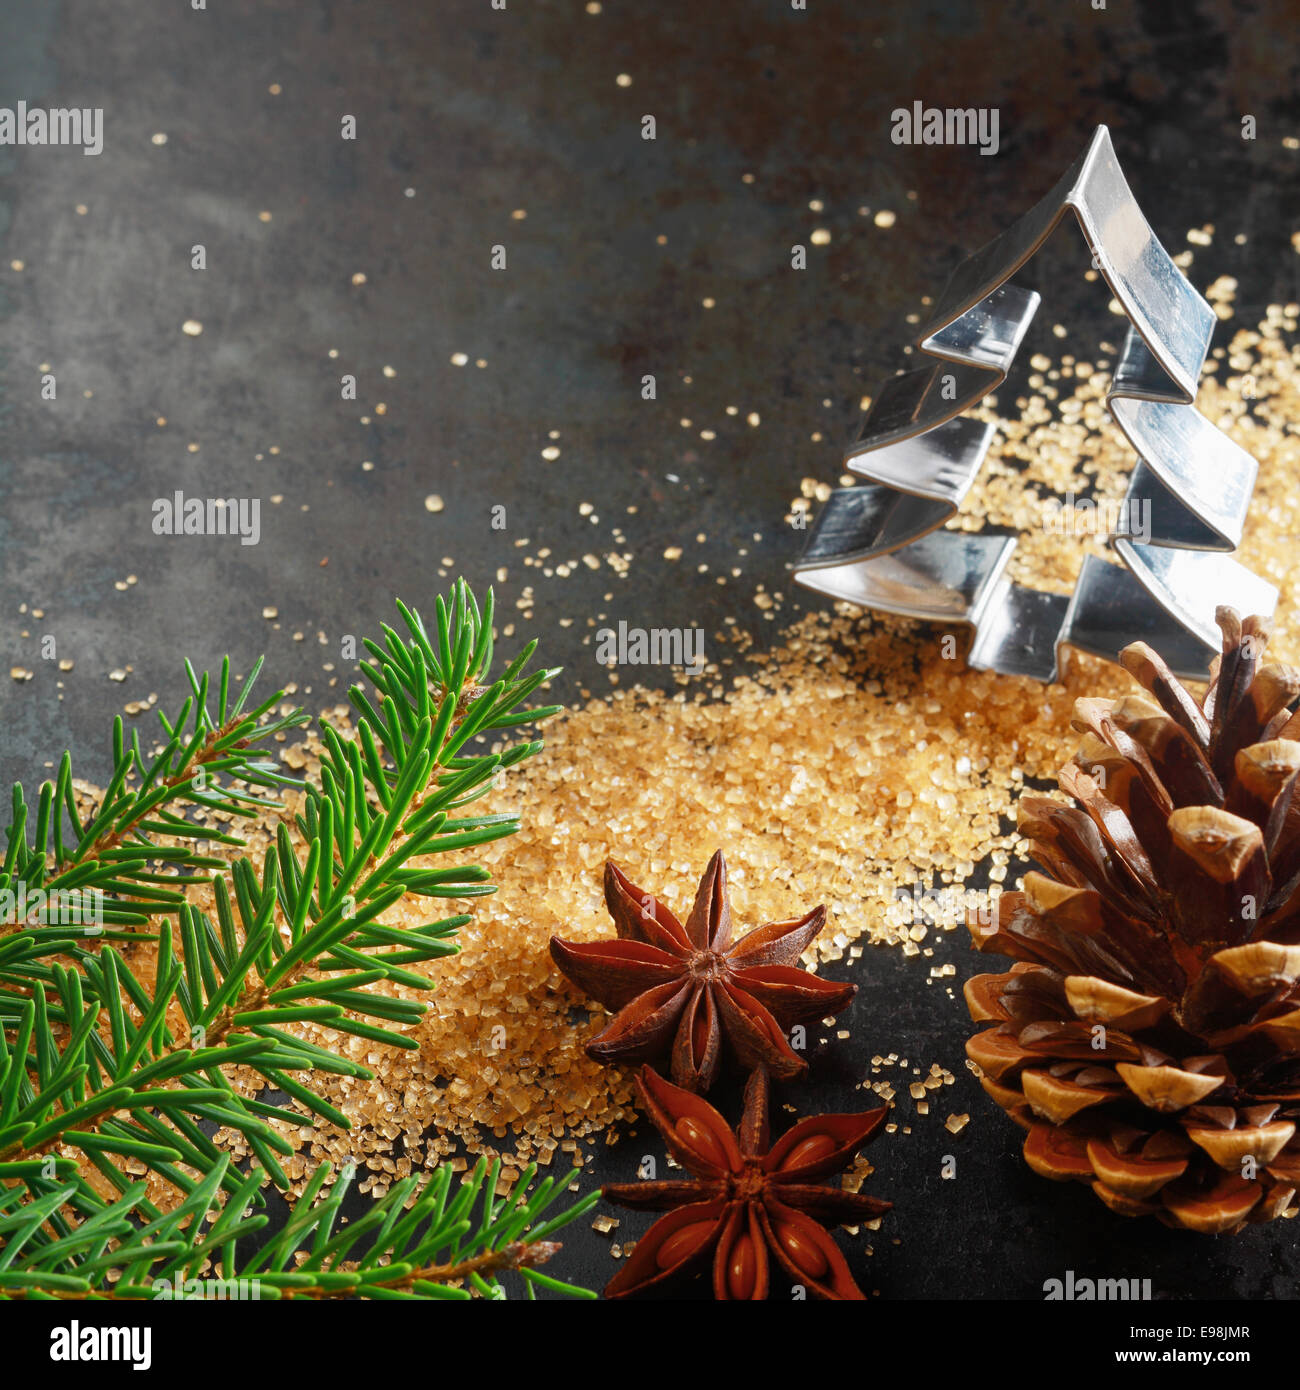 Weihnachts-Grußkarte-Hintergrund mit einem Ausstecher in Form eines Weihnachtsbaumes mit Tannenzweig, Kegel, karamellisierten braunen Zucker und Sternanis würzen auf einem dunklen Hintergrund mit Exemplar Stockfoto